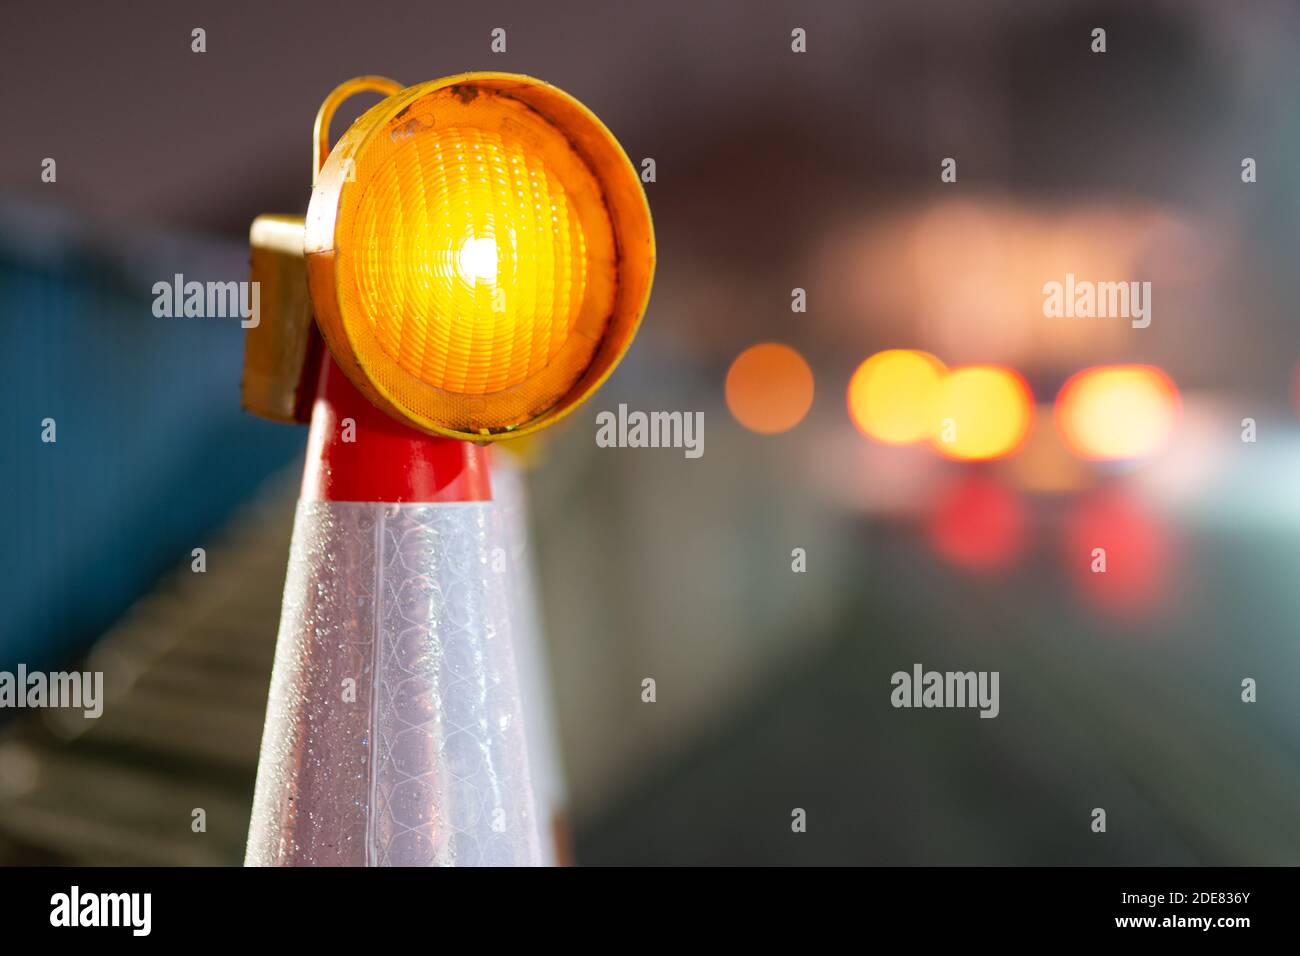 Auto vorbei ein gelbes Blinklicht auf einem Kegel in Baustellen im  Vereinigten Königreich Stockfotografie - Alamy